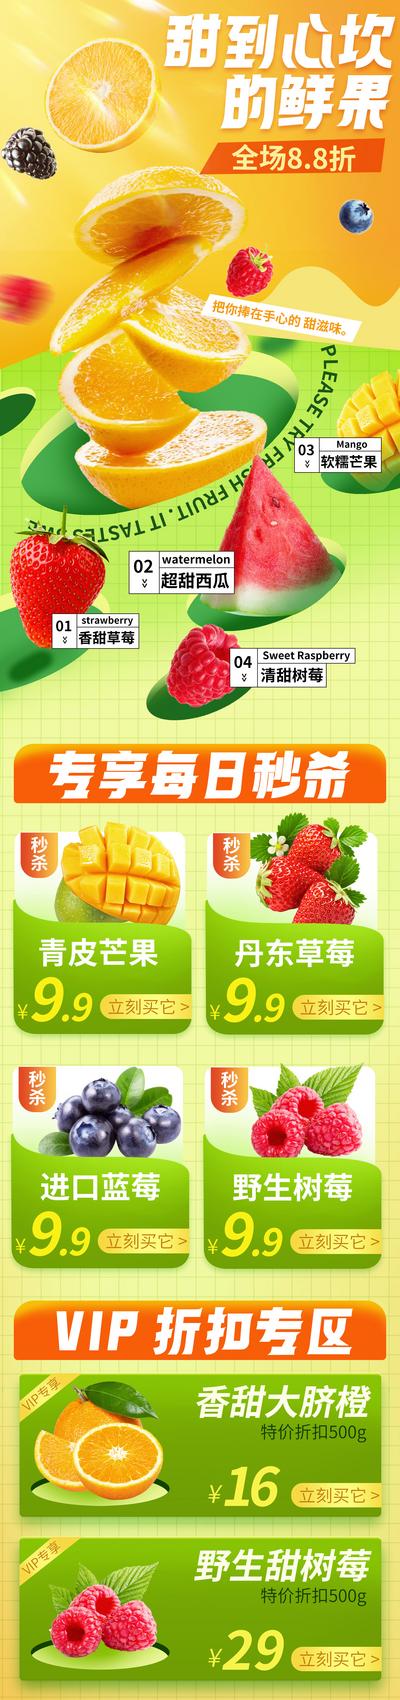 南门网 海报 长图 餐饮 水果 蔬菜 生鲜 营销 每日秒杀 活动 绿色 健康